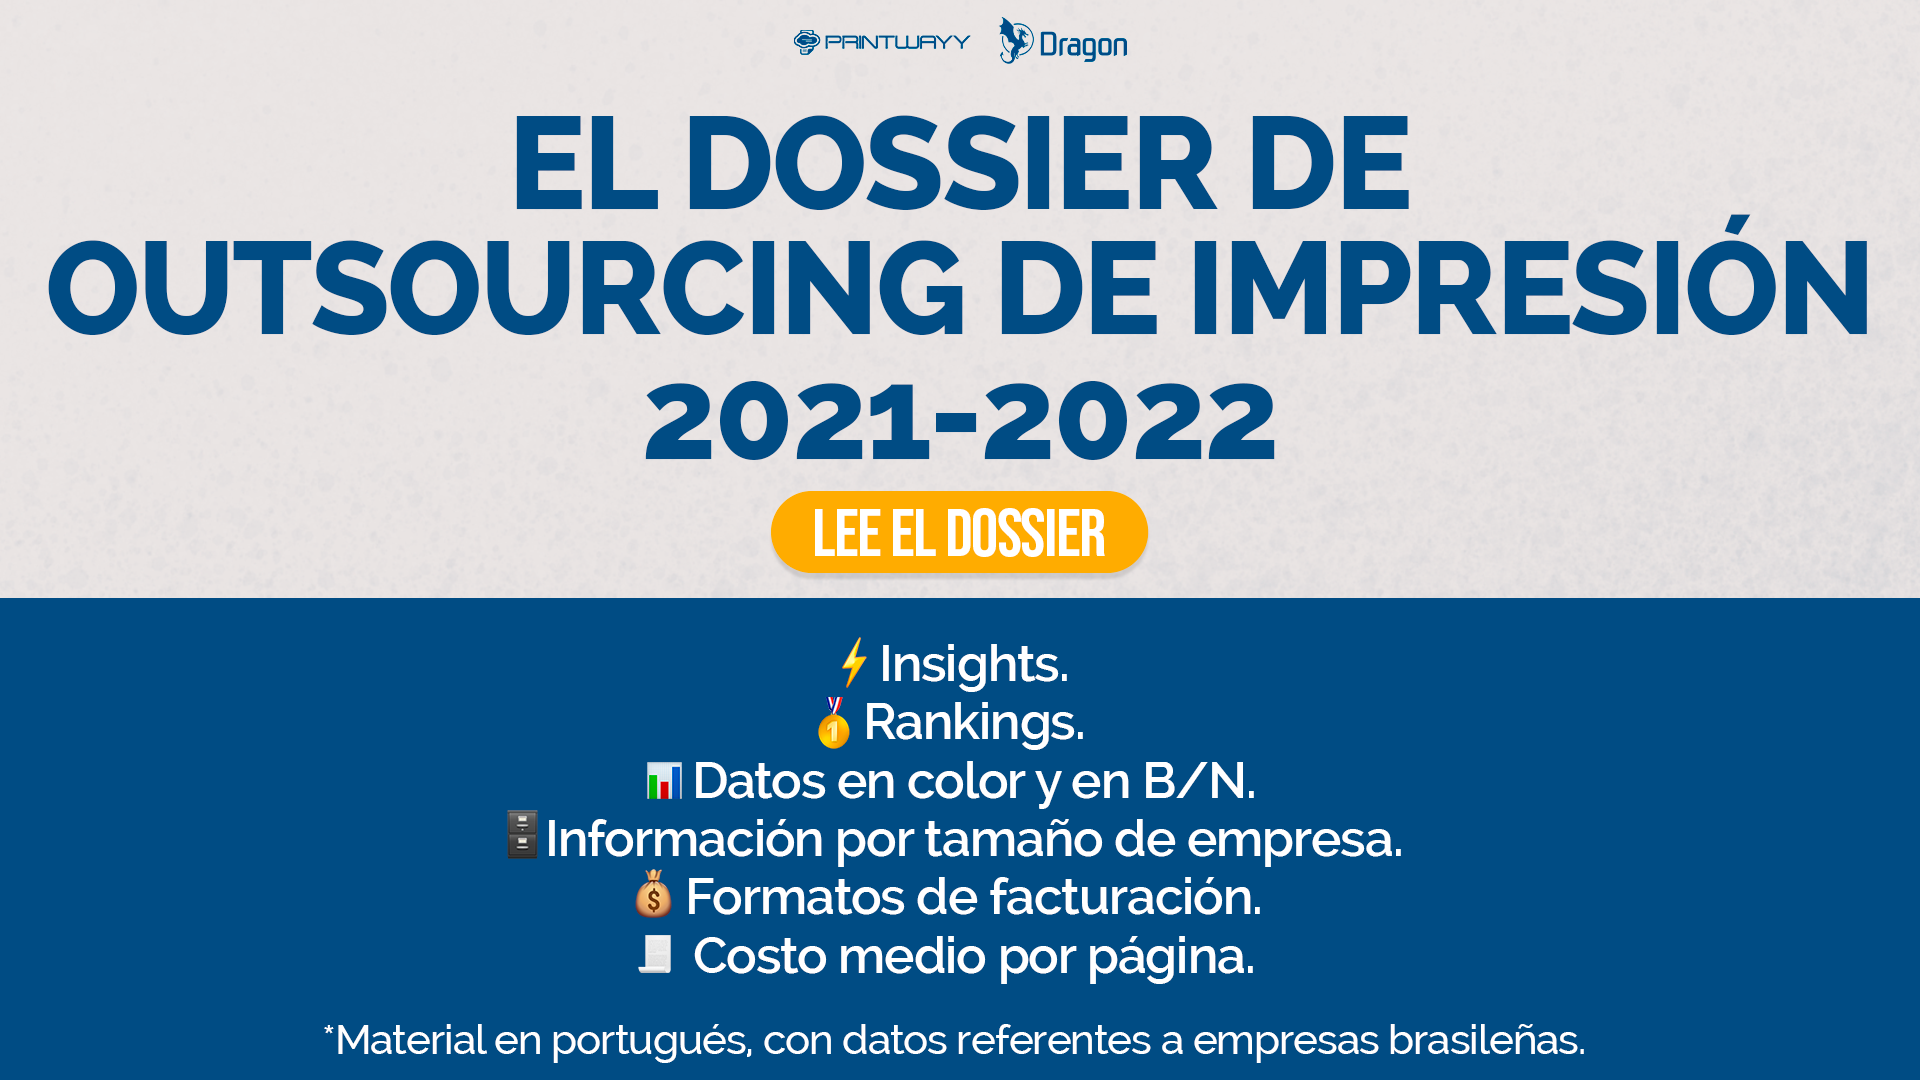 Invitación para acceder el Dossier de Outsourcing de Impresión 2021-2022.